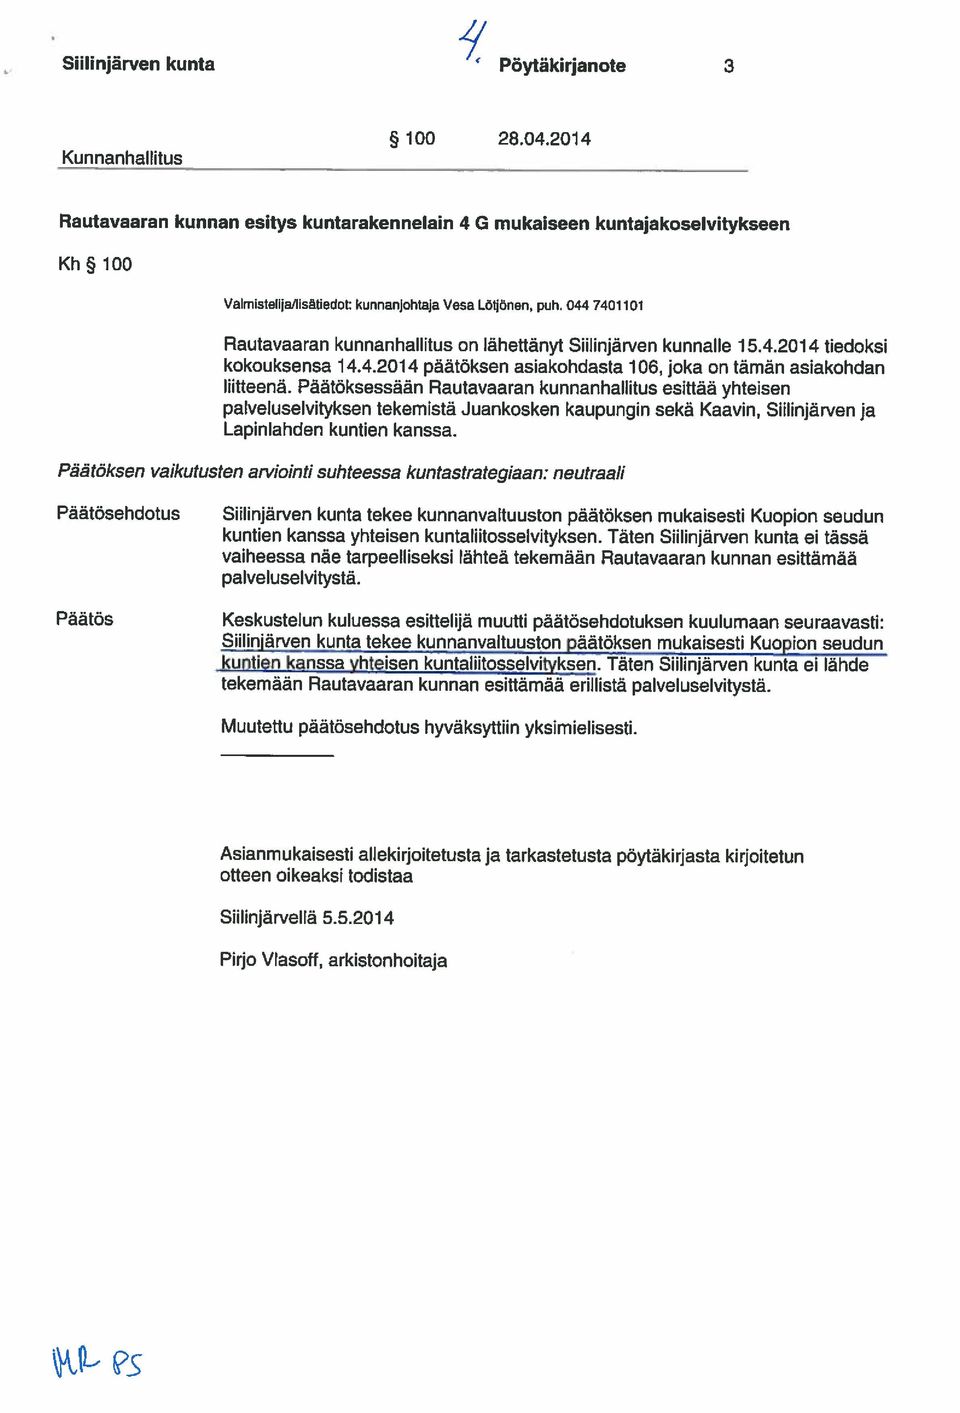 044 7401101 Rautavaaran kunnanhallitus on Iãheftanyt Siilinjarven kunnalle 15.4.2014 tiedaksi kokouksensa 14.4.2014 paãtoksen asiakohdasta 1061 joka on tämãn asiakohdan Iiilleena.